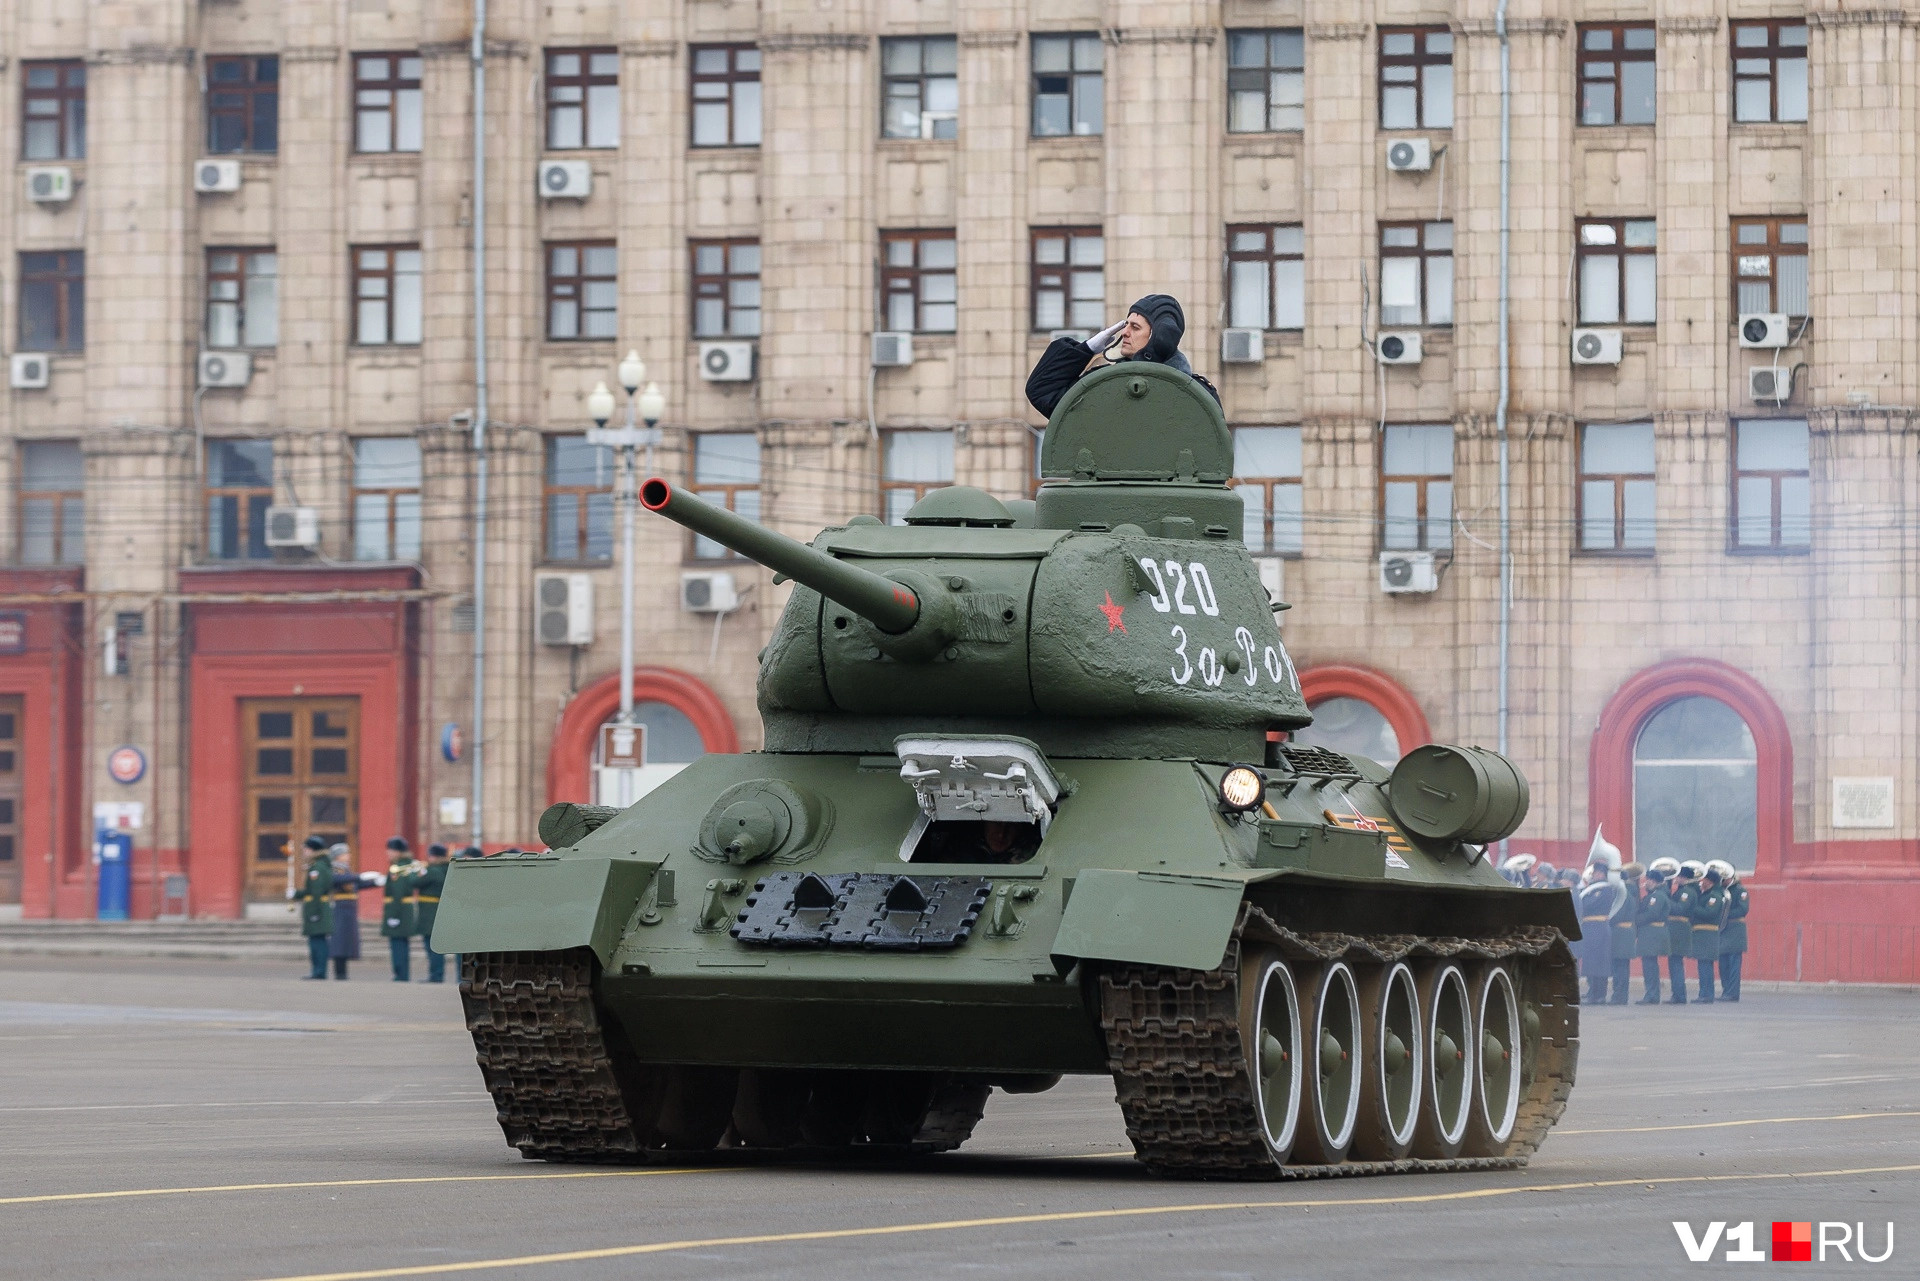 Военная техника — регулярный участник праздничных и памятных парадов в Волгограде